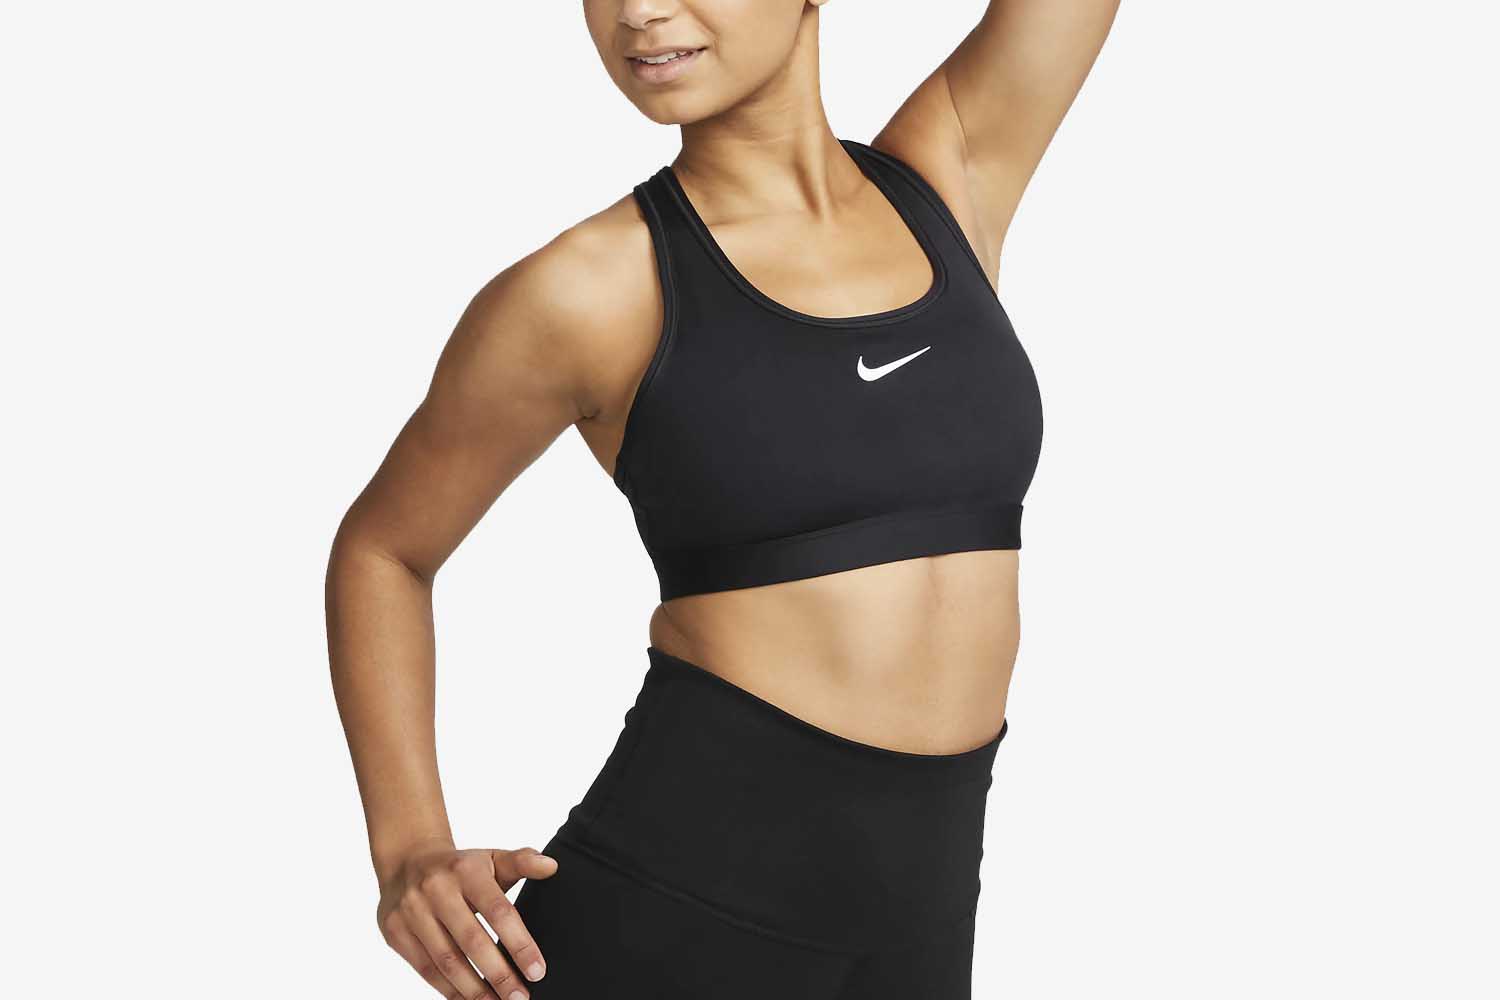 The Best Nike Gifts for Women - InsideHook